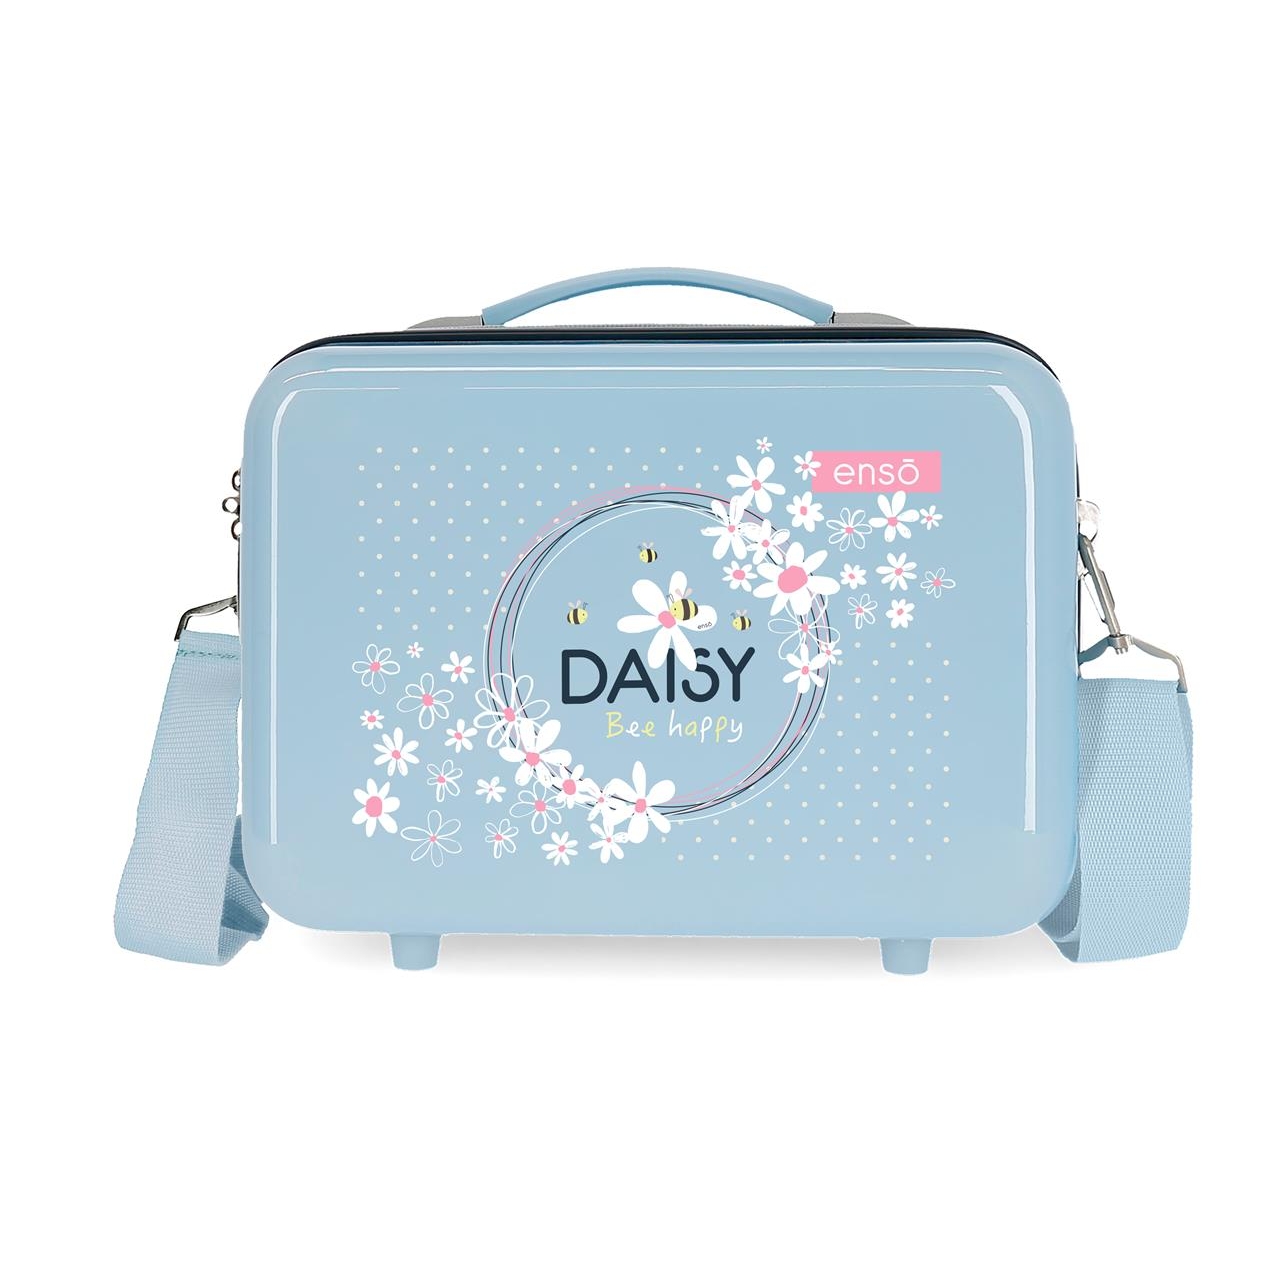 Neceser ABS Enso Daisy Adaptable Azul claro